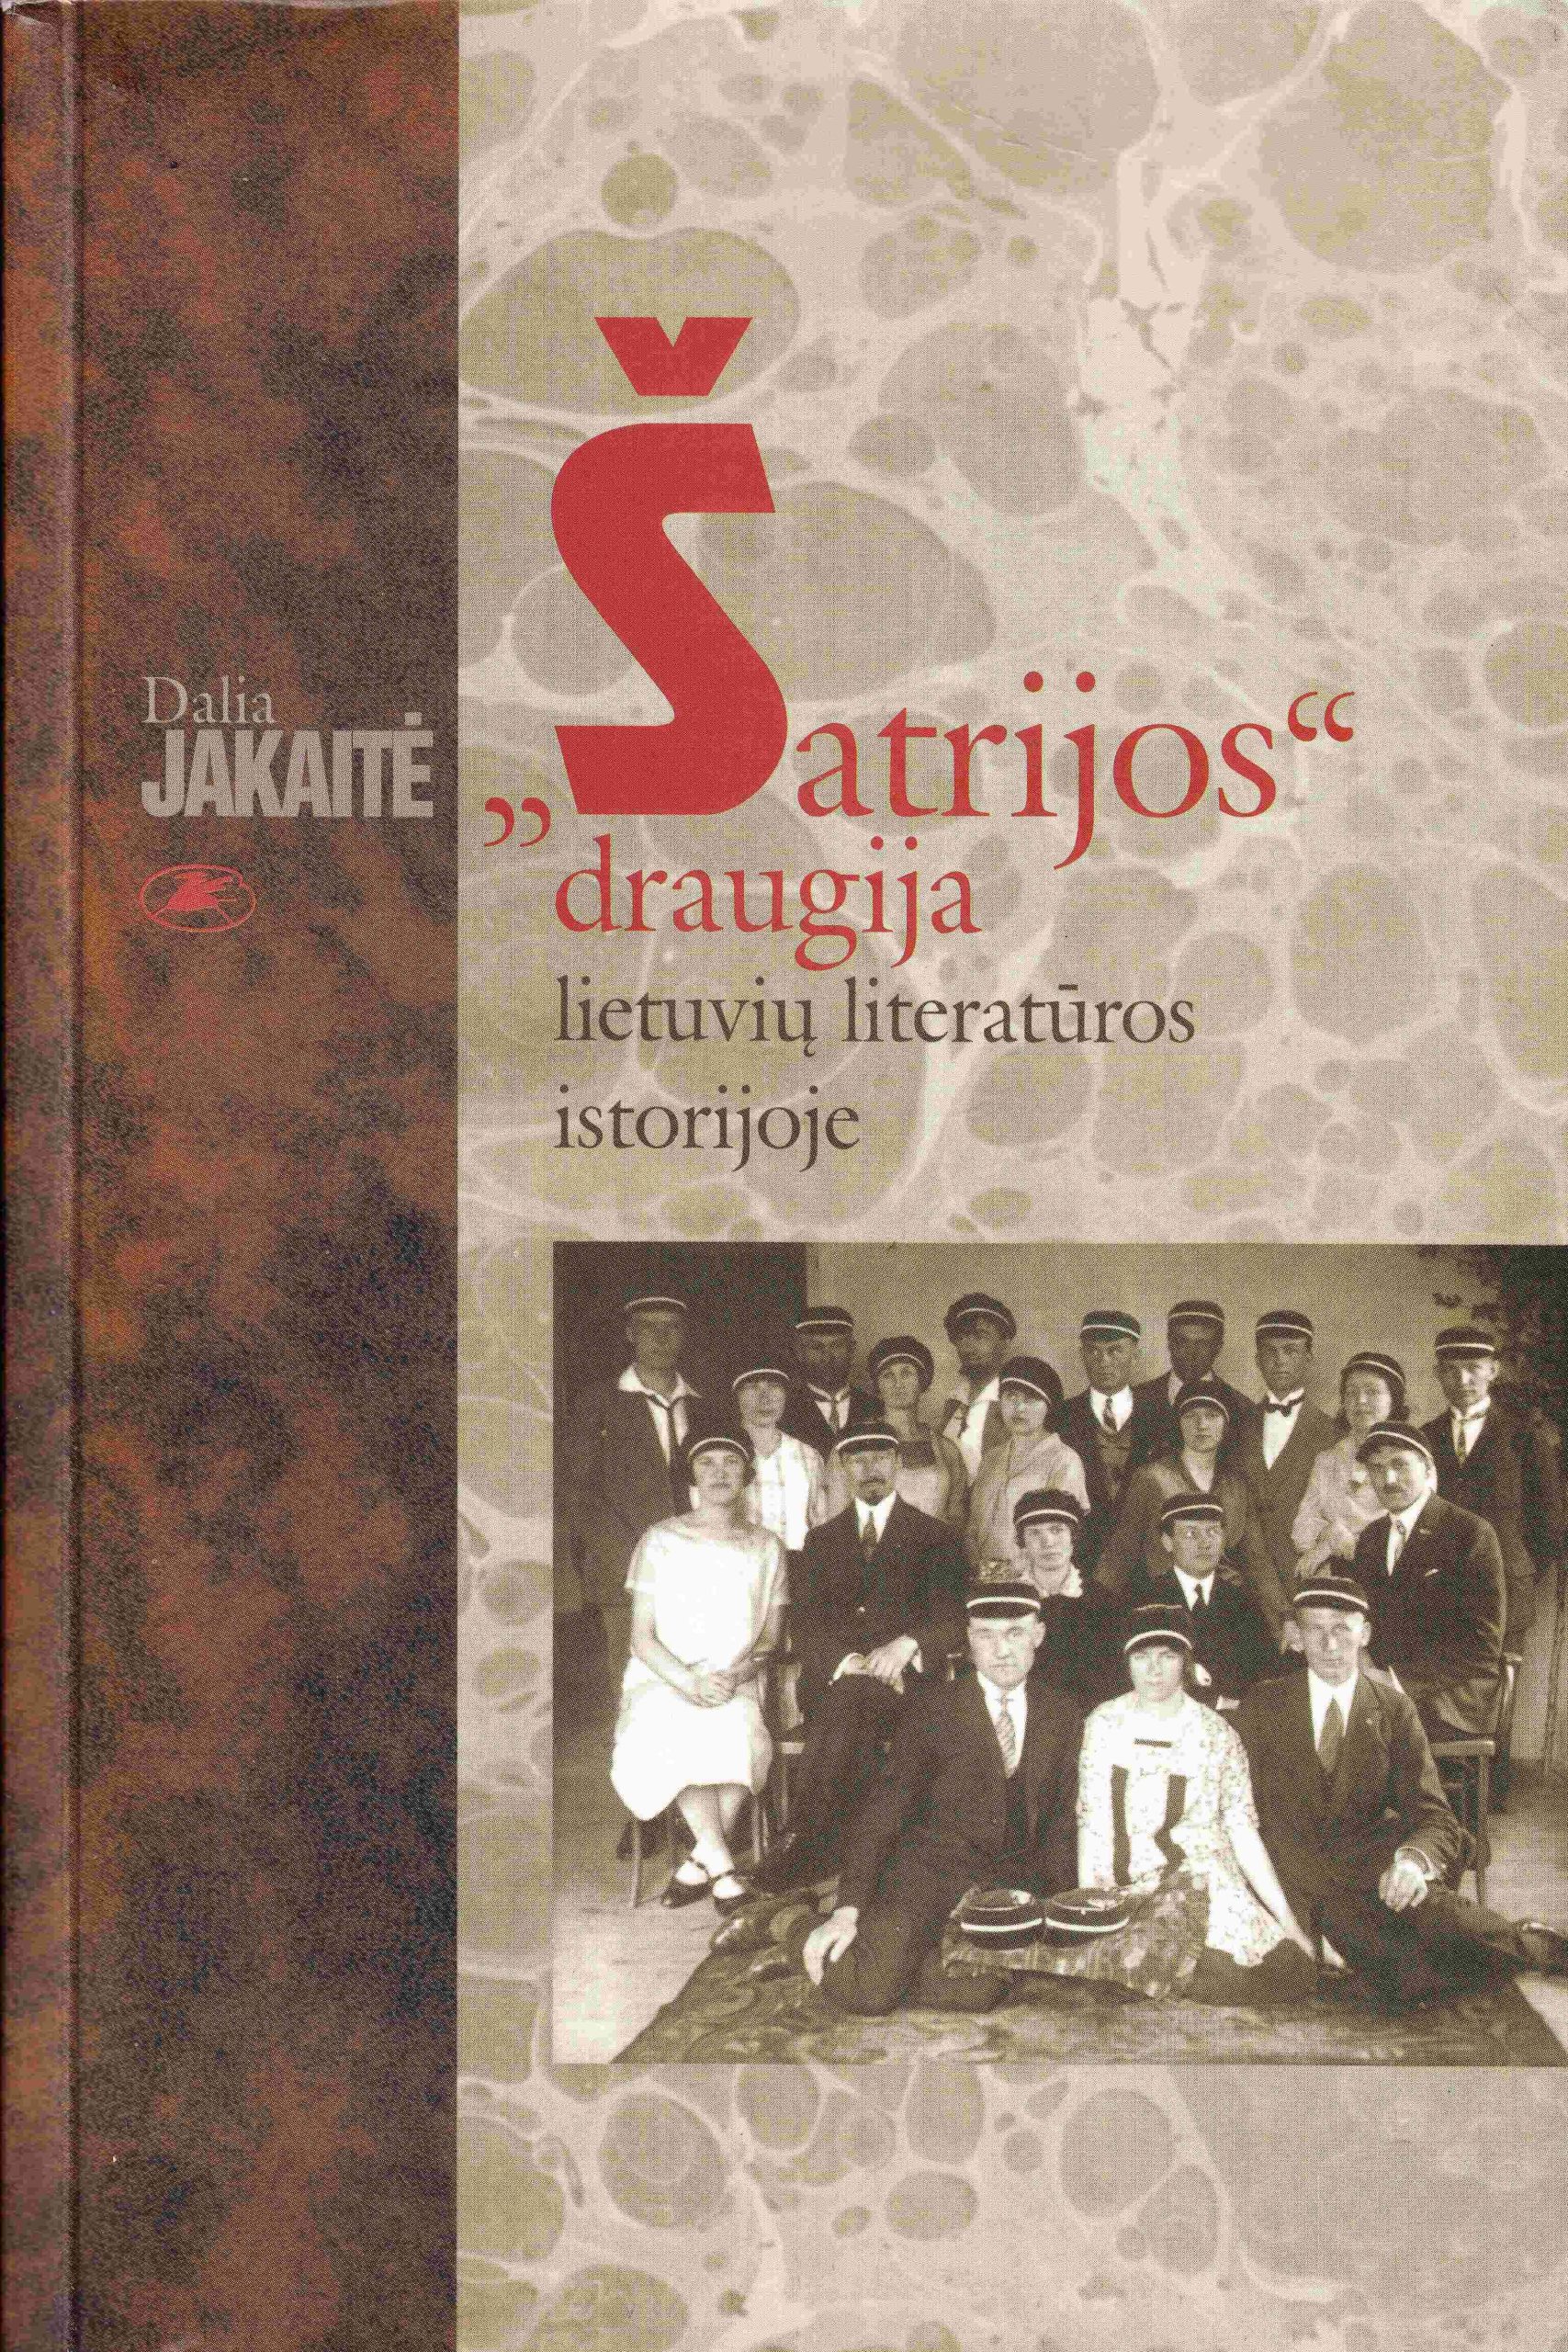 Dalia Jakaitė. „Šatrijos“ draugija lietuvių literatūros istorijoje. Vilnius, 2002. MLLM 77744